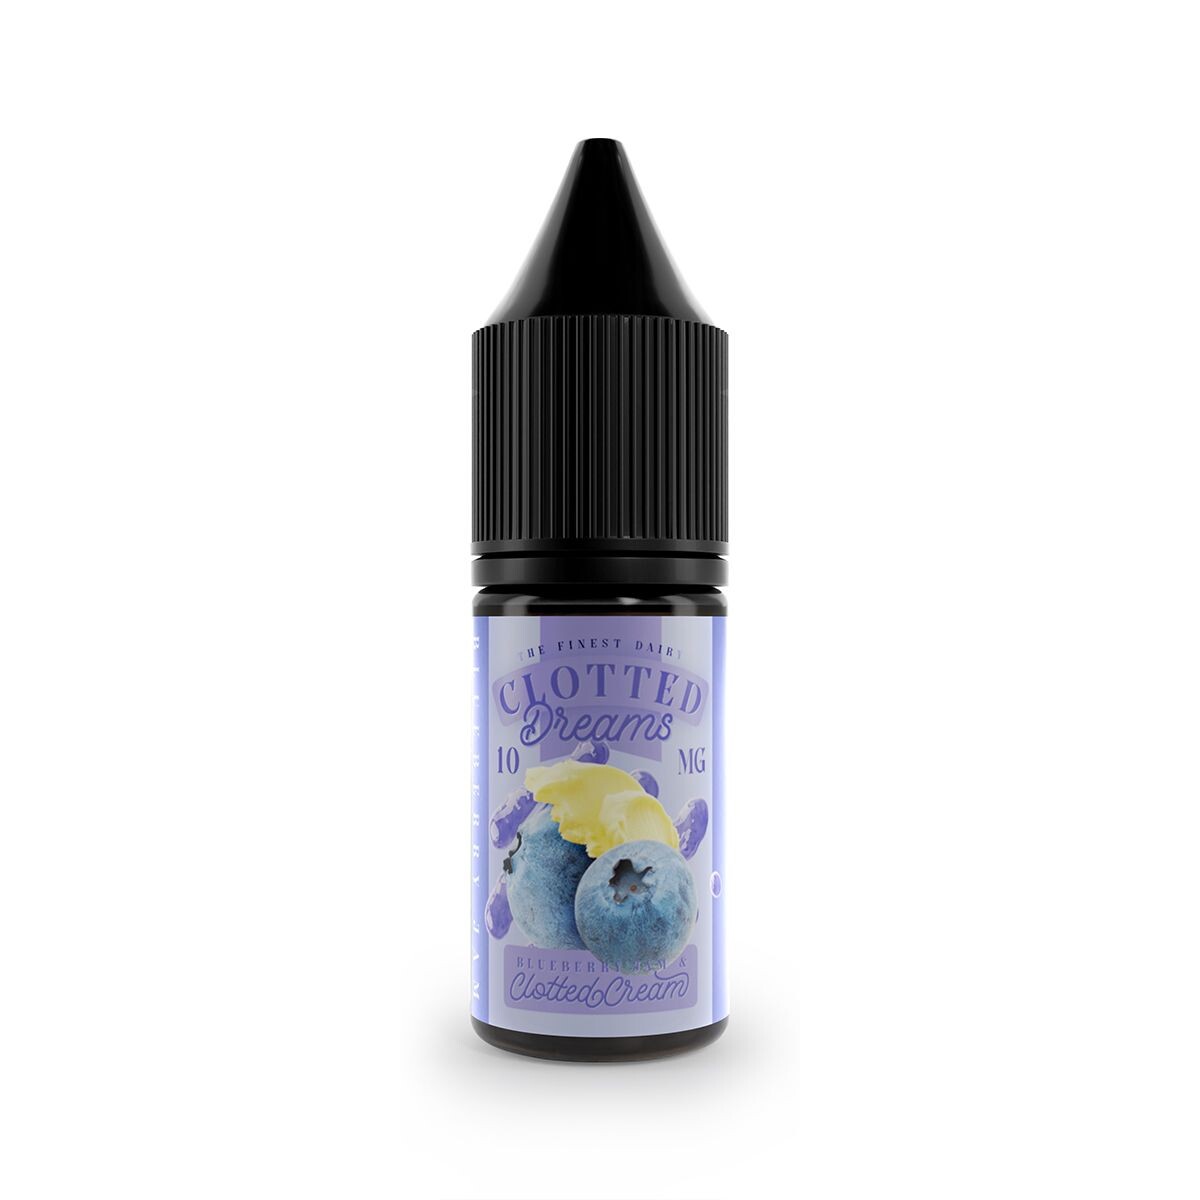 blueberry jam and clotted cream flavour e-liquid nicotine salt 10ml by dispergo